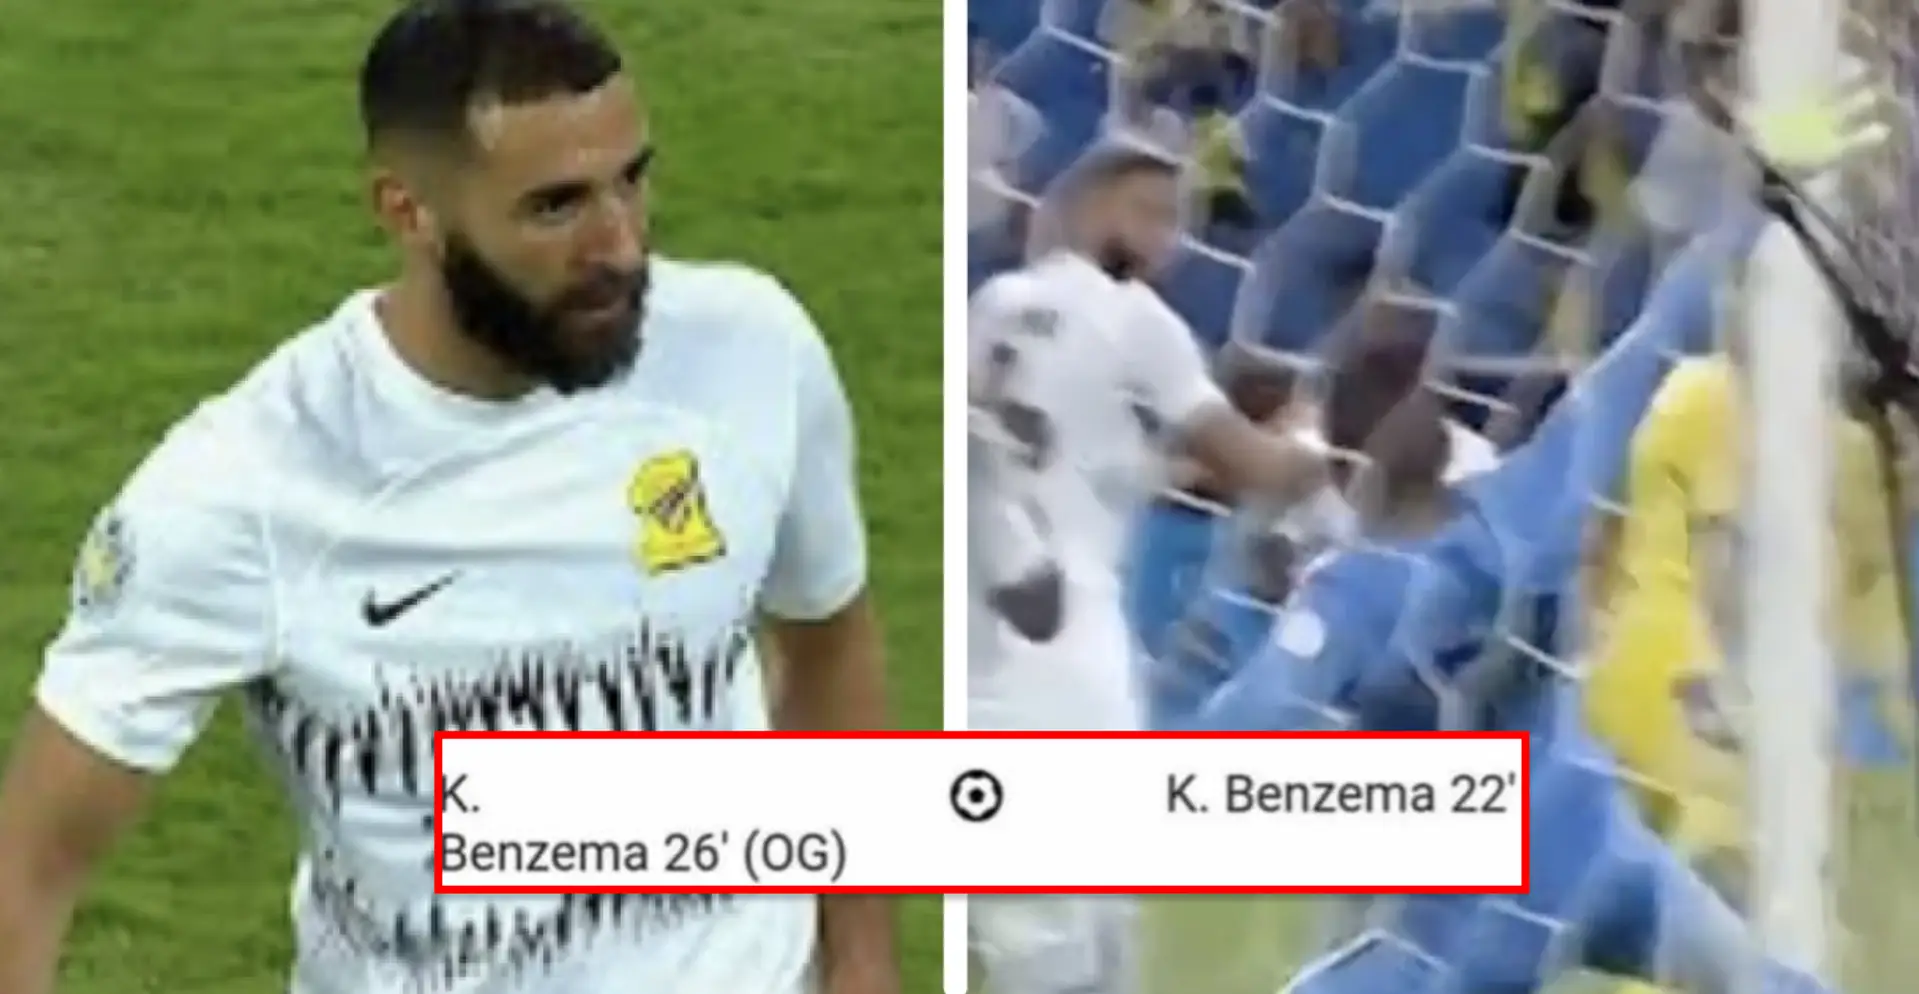 Benzema marque un but ET un but contre son camp en 4 minutes : comment c'est arrivé